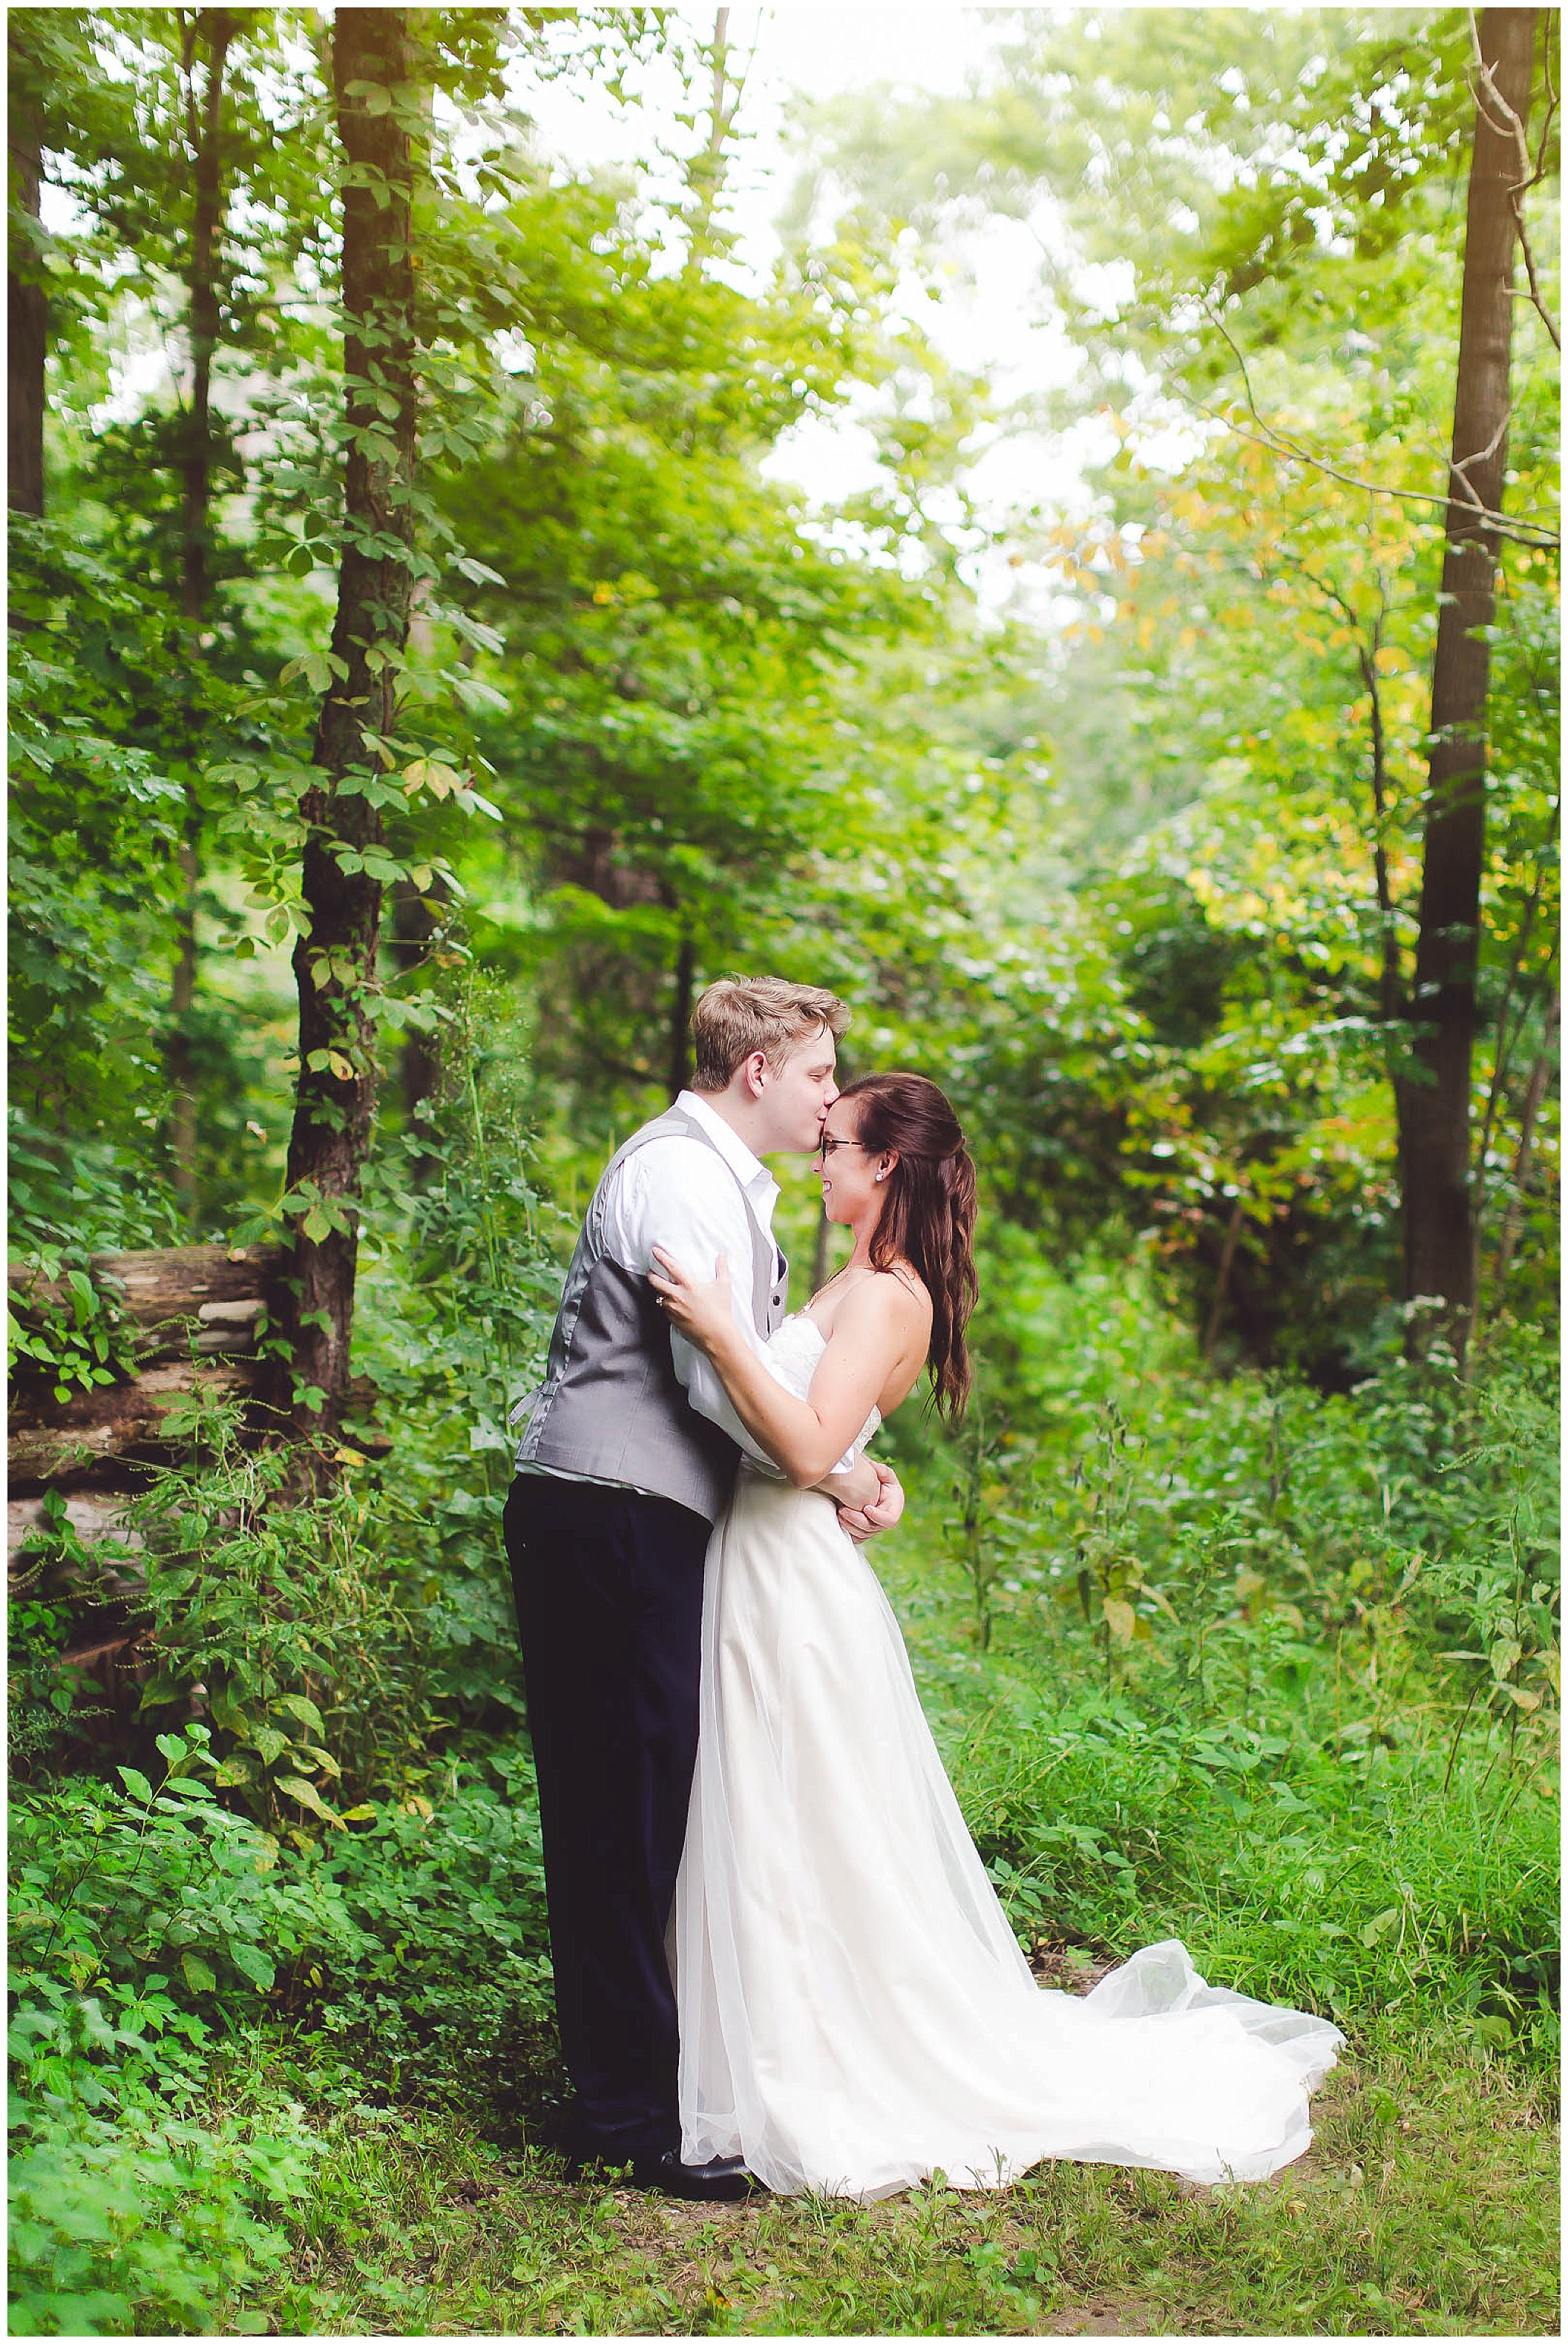 Stunning backyard wedding with twinkly lights, Fort Wayne Indiana Wedding Photographer_0042.jpg